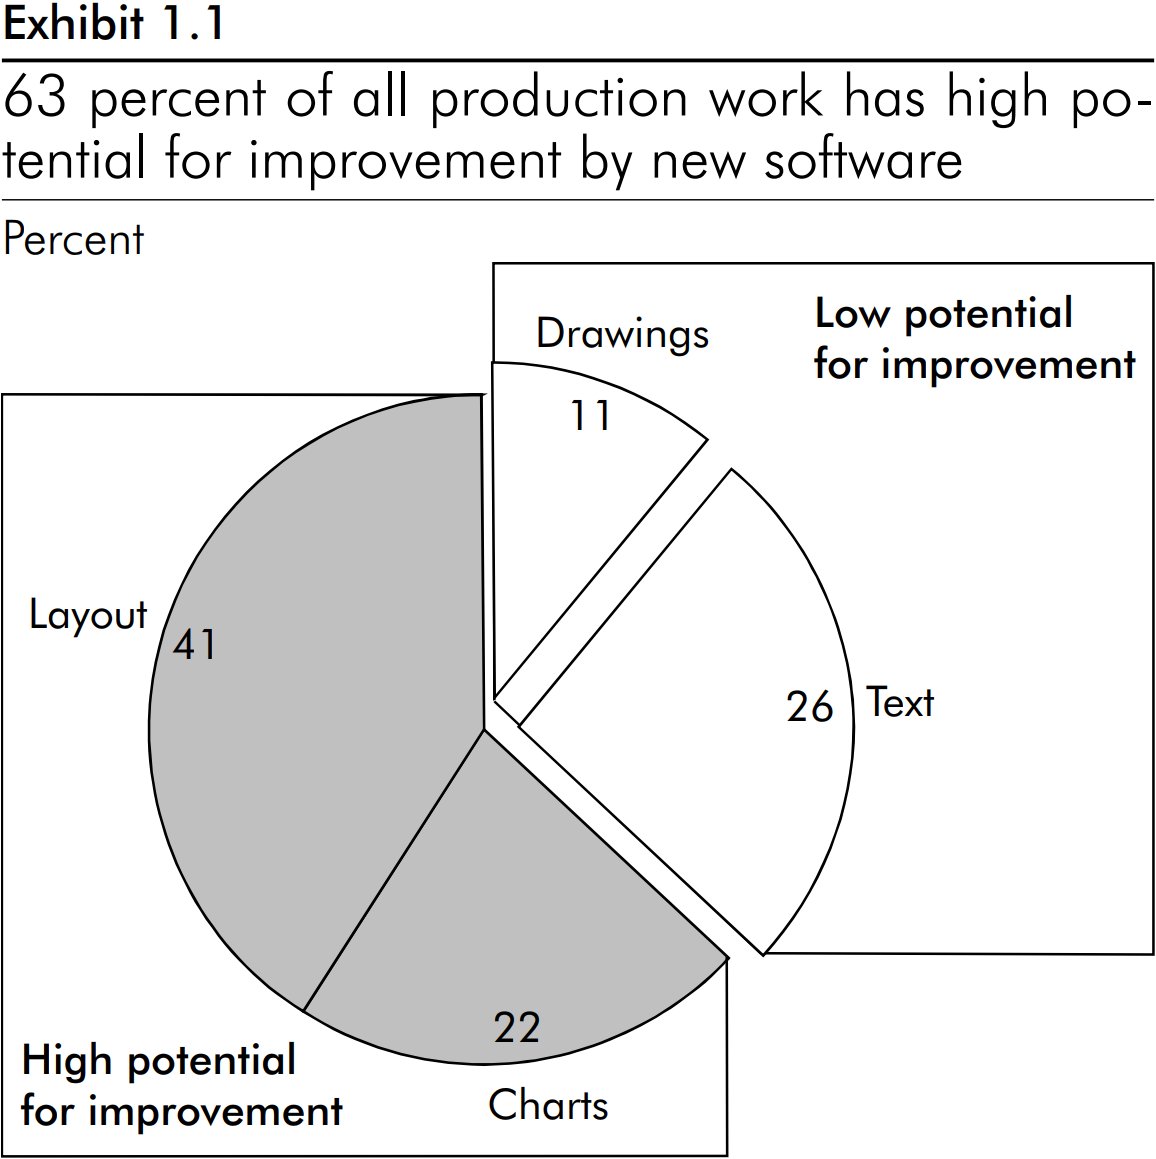 Круговую диаграмму, на создание которой уходит 63 % времени в процессе создания слайда, можно существенно улучшить.